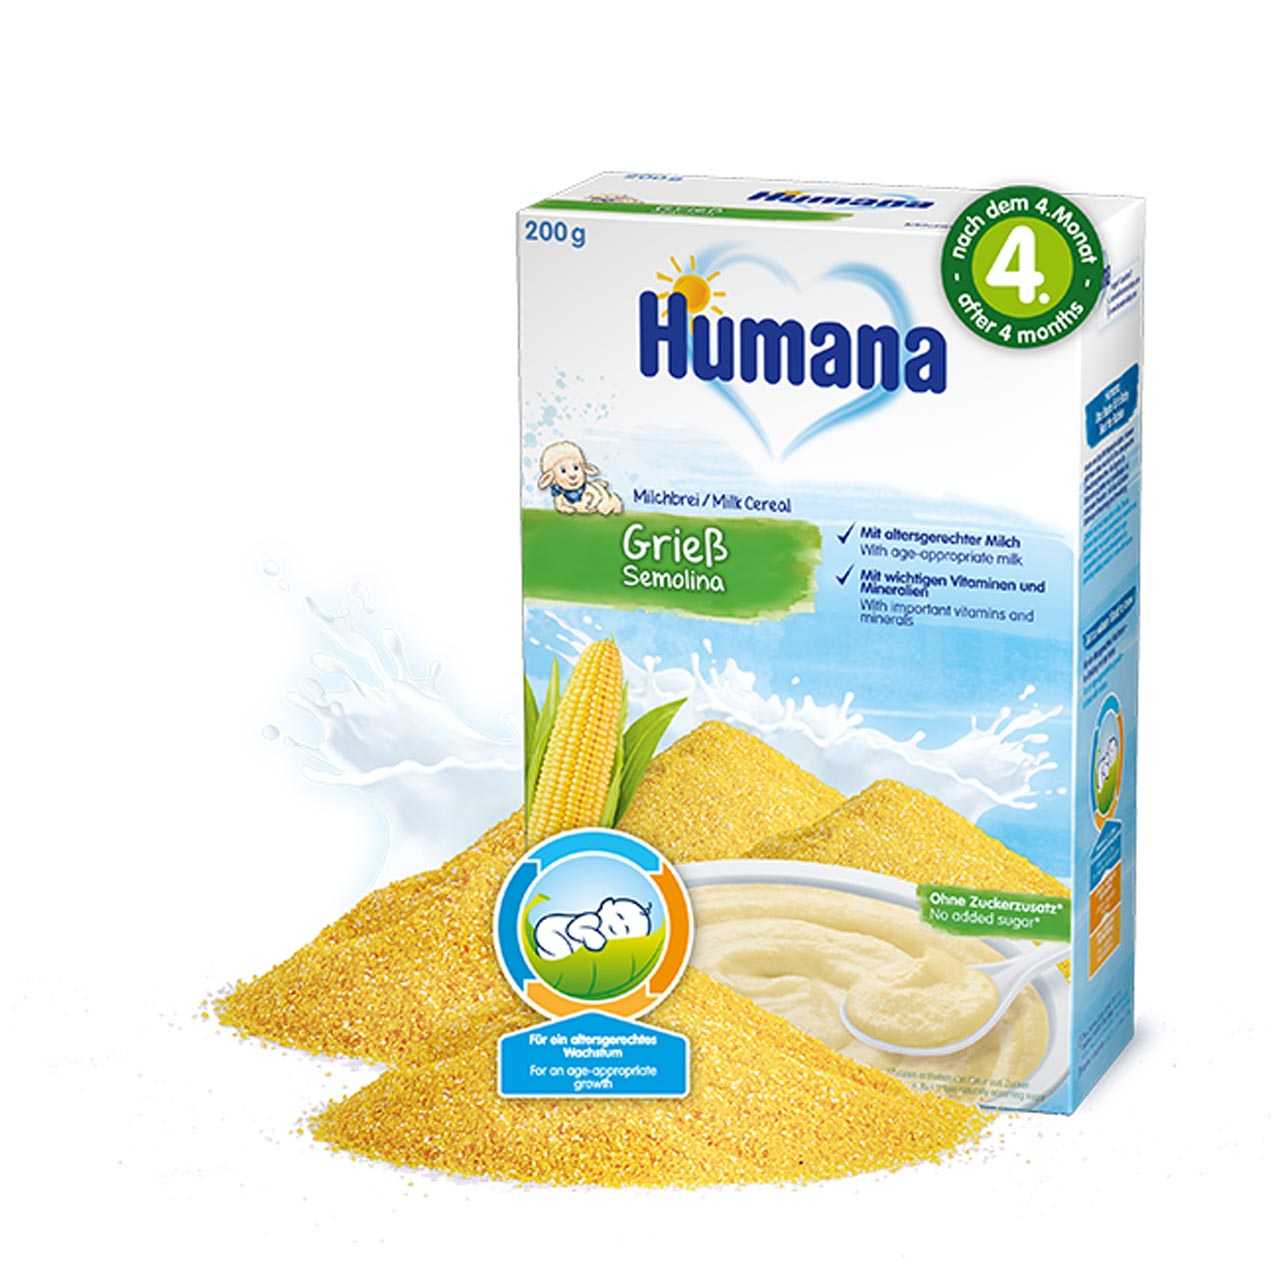 سرلاک ( غذای کمکی) آرد سمولینا و ذرت و شیر هومانا Humana